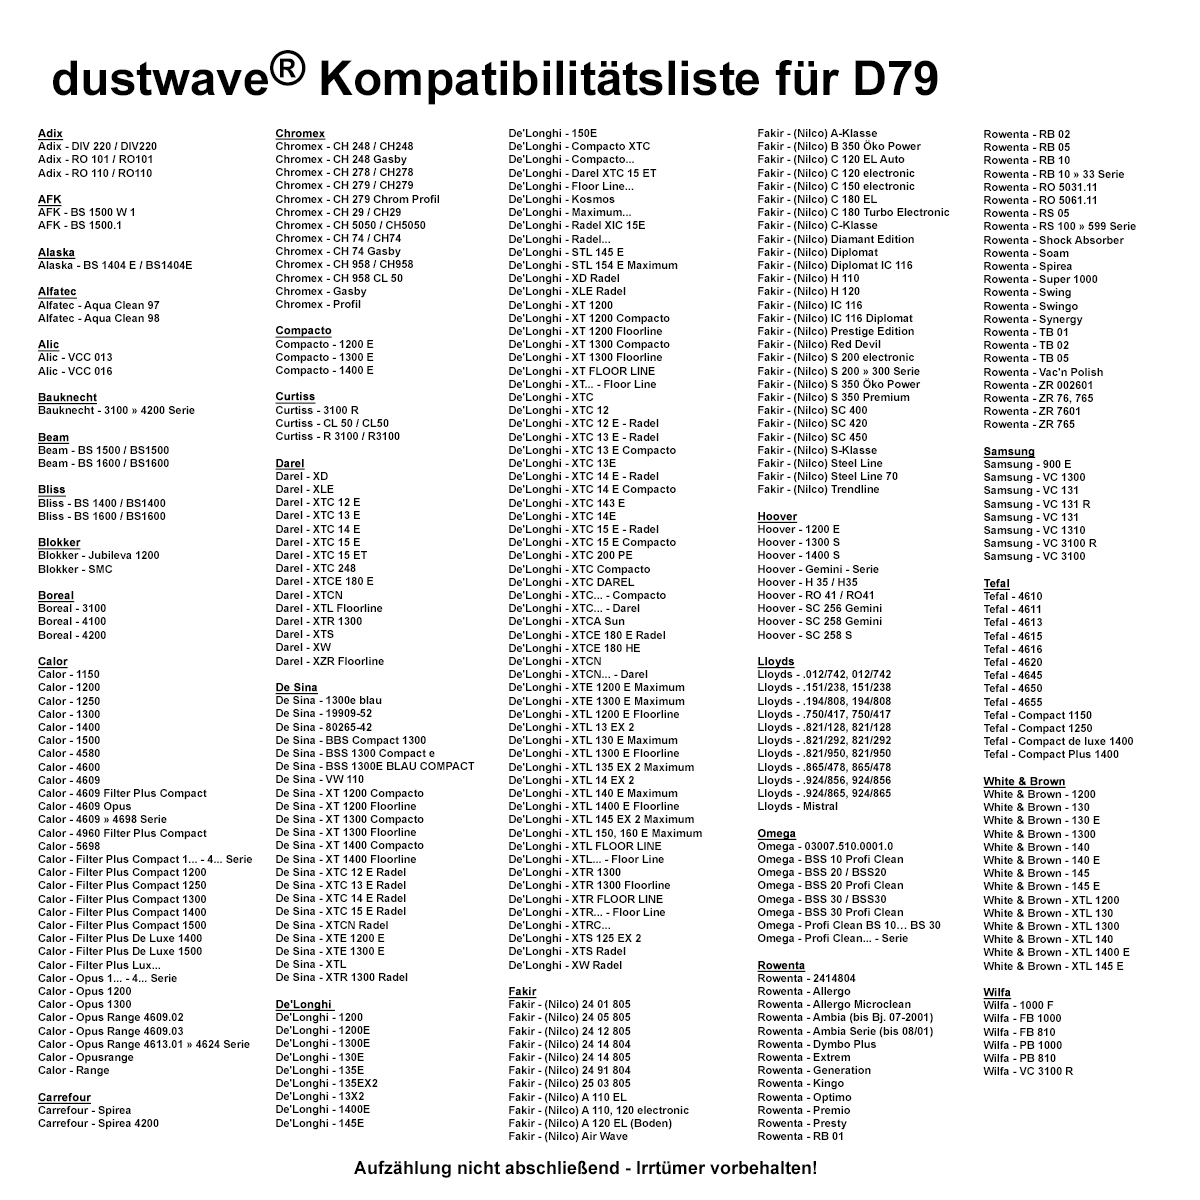 Dustwave® 1 Staubsaugerbeutel für Bliss BS 1600 / BS1600 - hocheffizient, mehrlagiges Mikrovlies mit Hygieneverschluss - Made in Germany